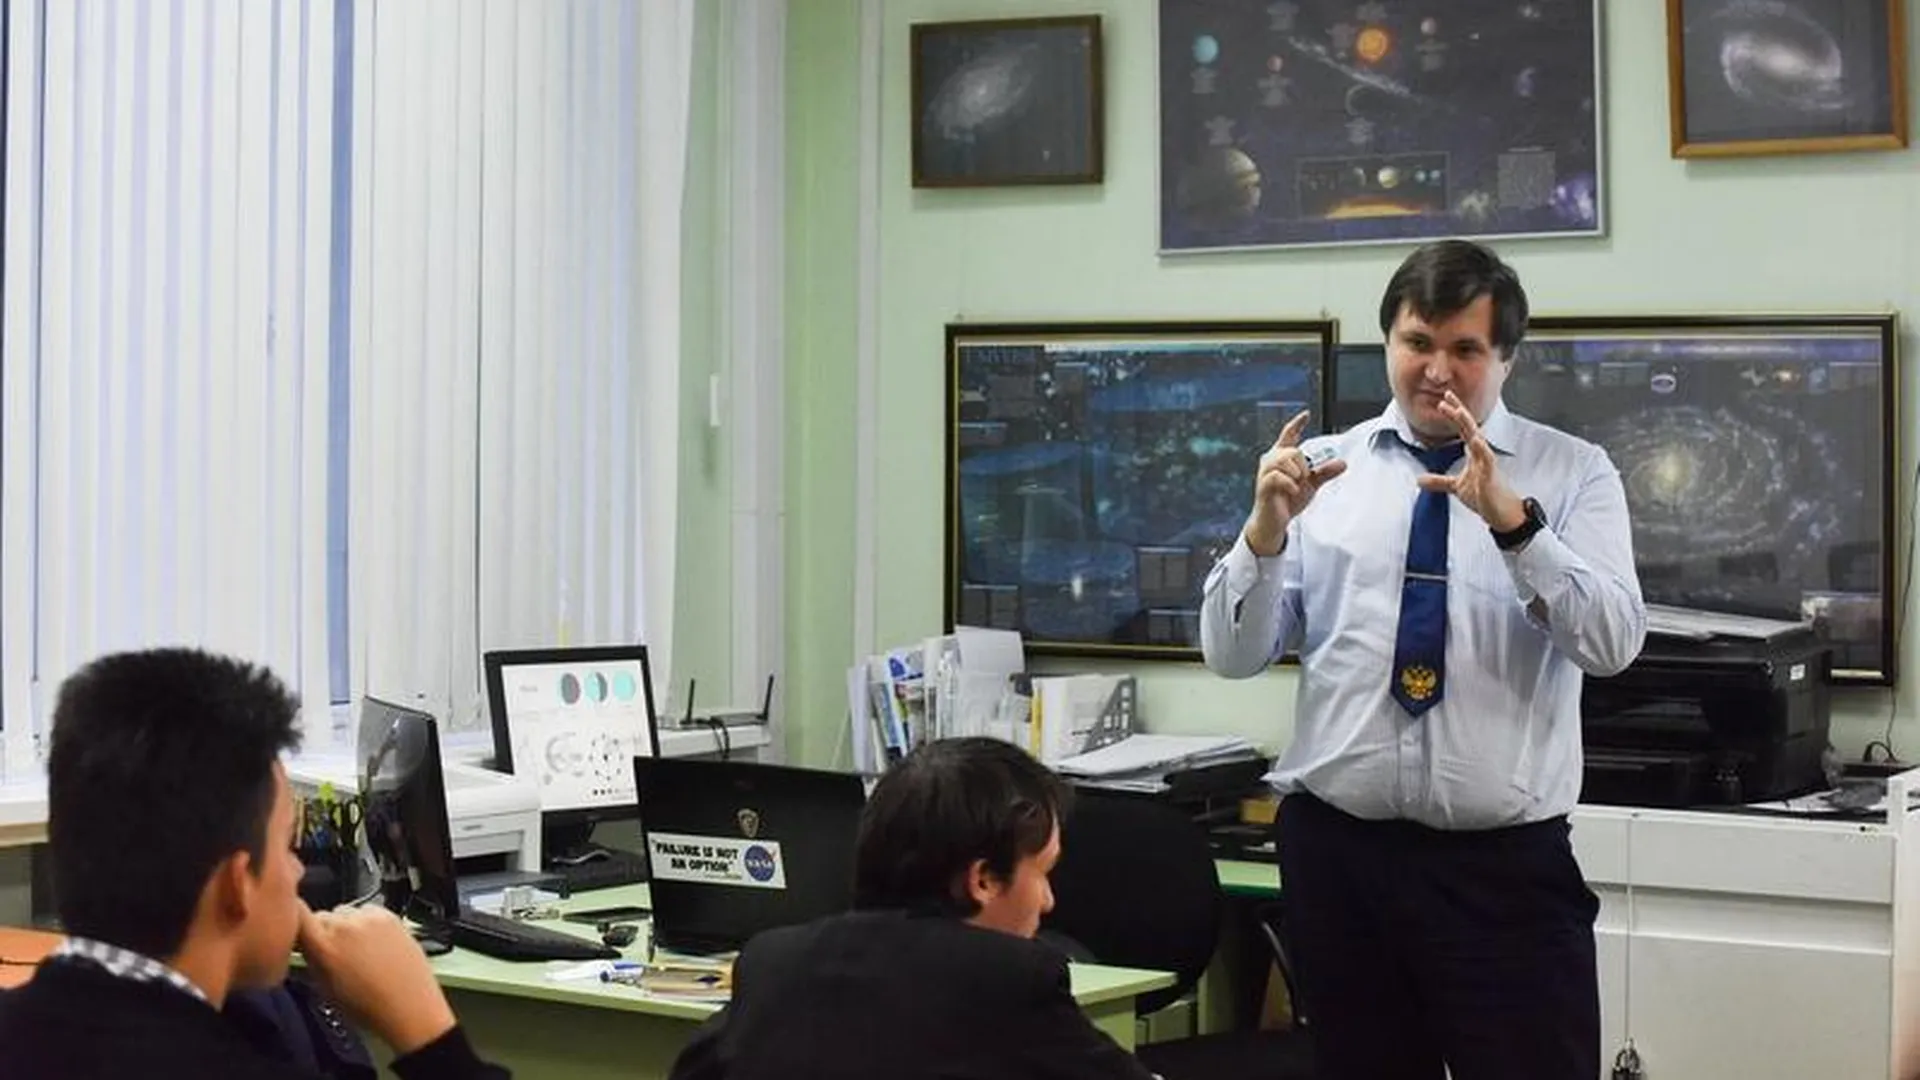 Небо в алмазах: рассказываем о кружке по астрономии в Жуковском